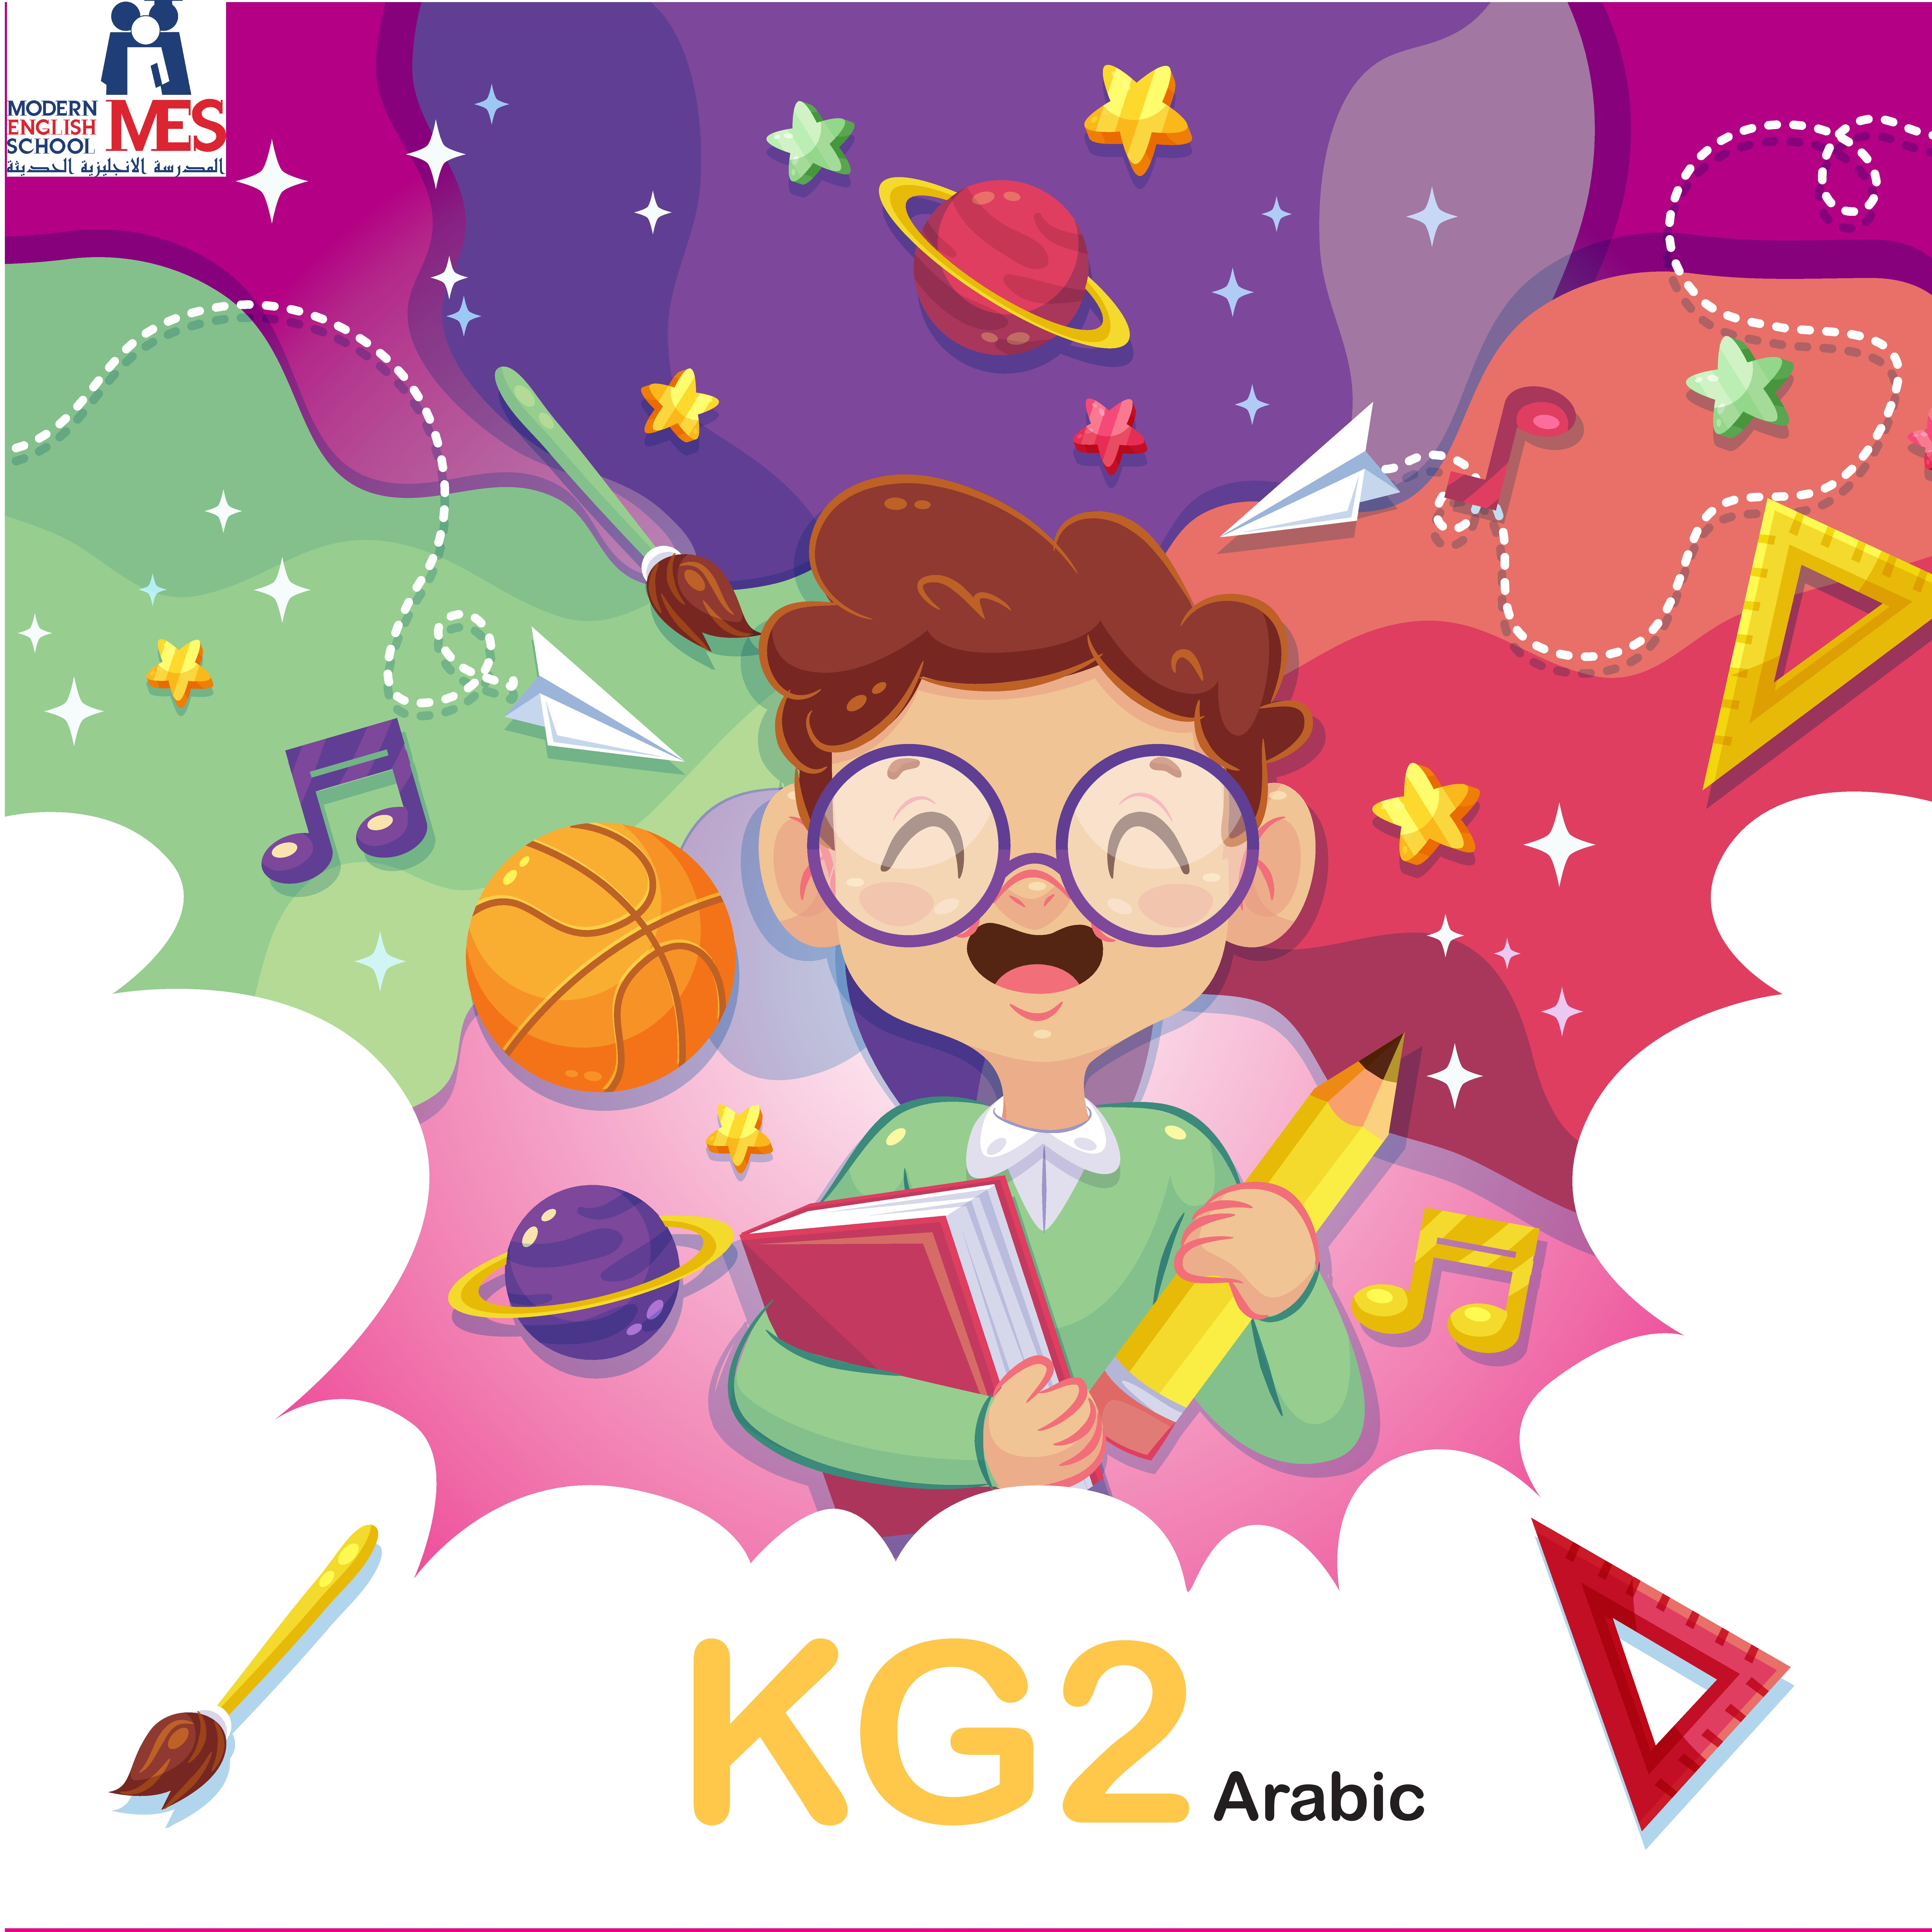 Kg2 Arabic